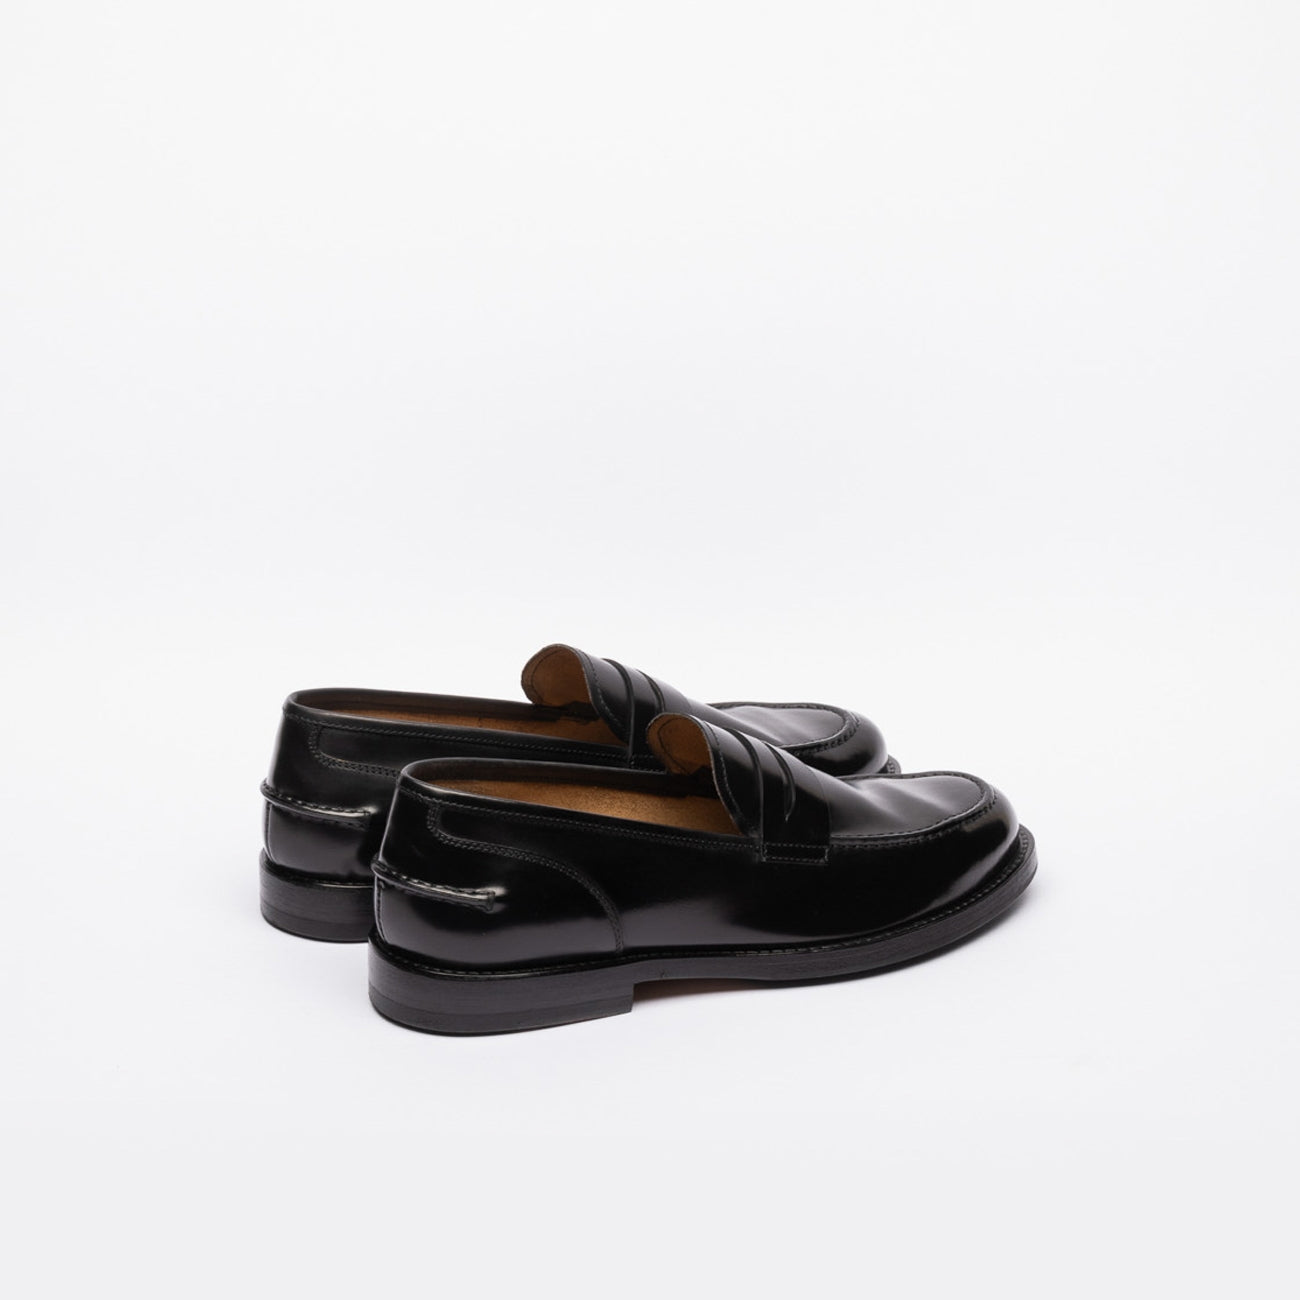 Mocassino penny loafer A. Fasciani Zen 57020 in pelle spazzolata nera